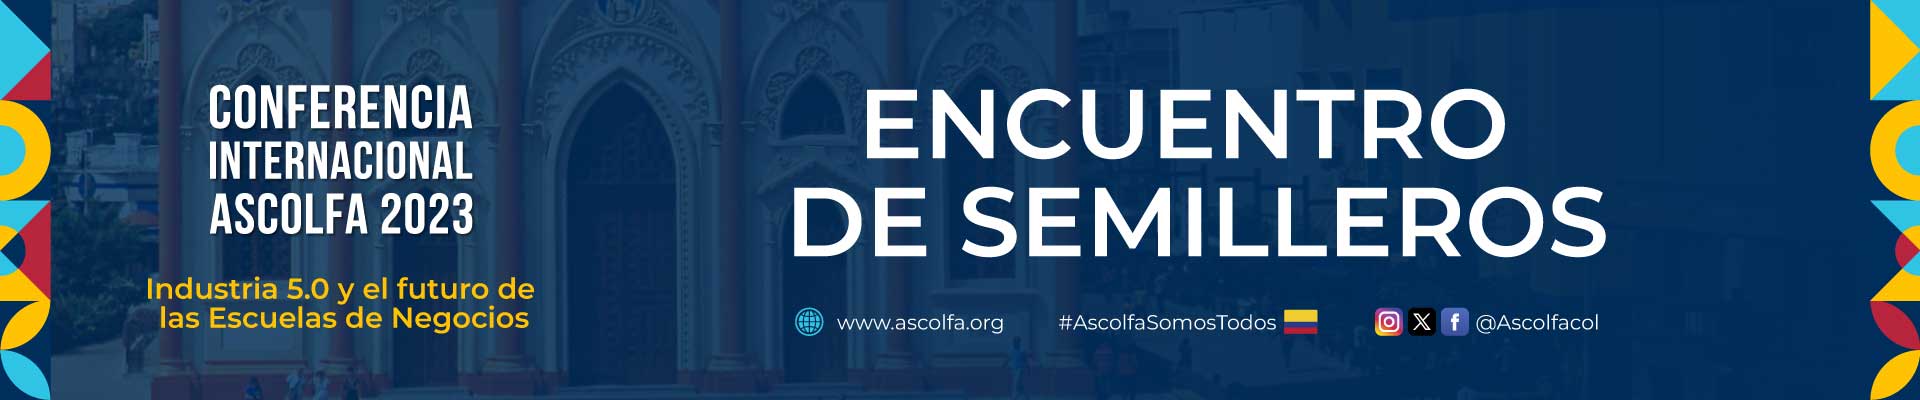 Banner Conferencia Internacional ASCOLFA 2023